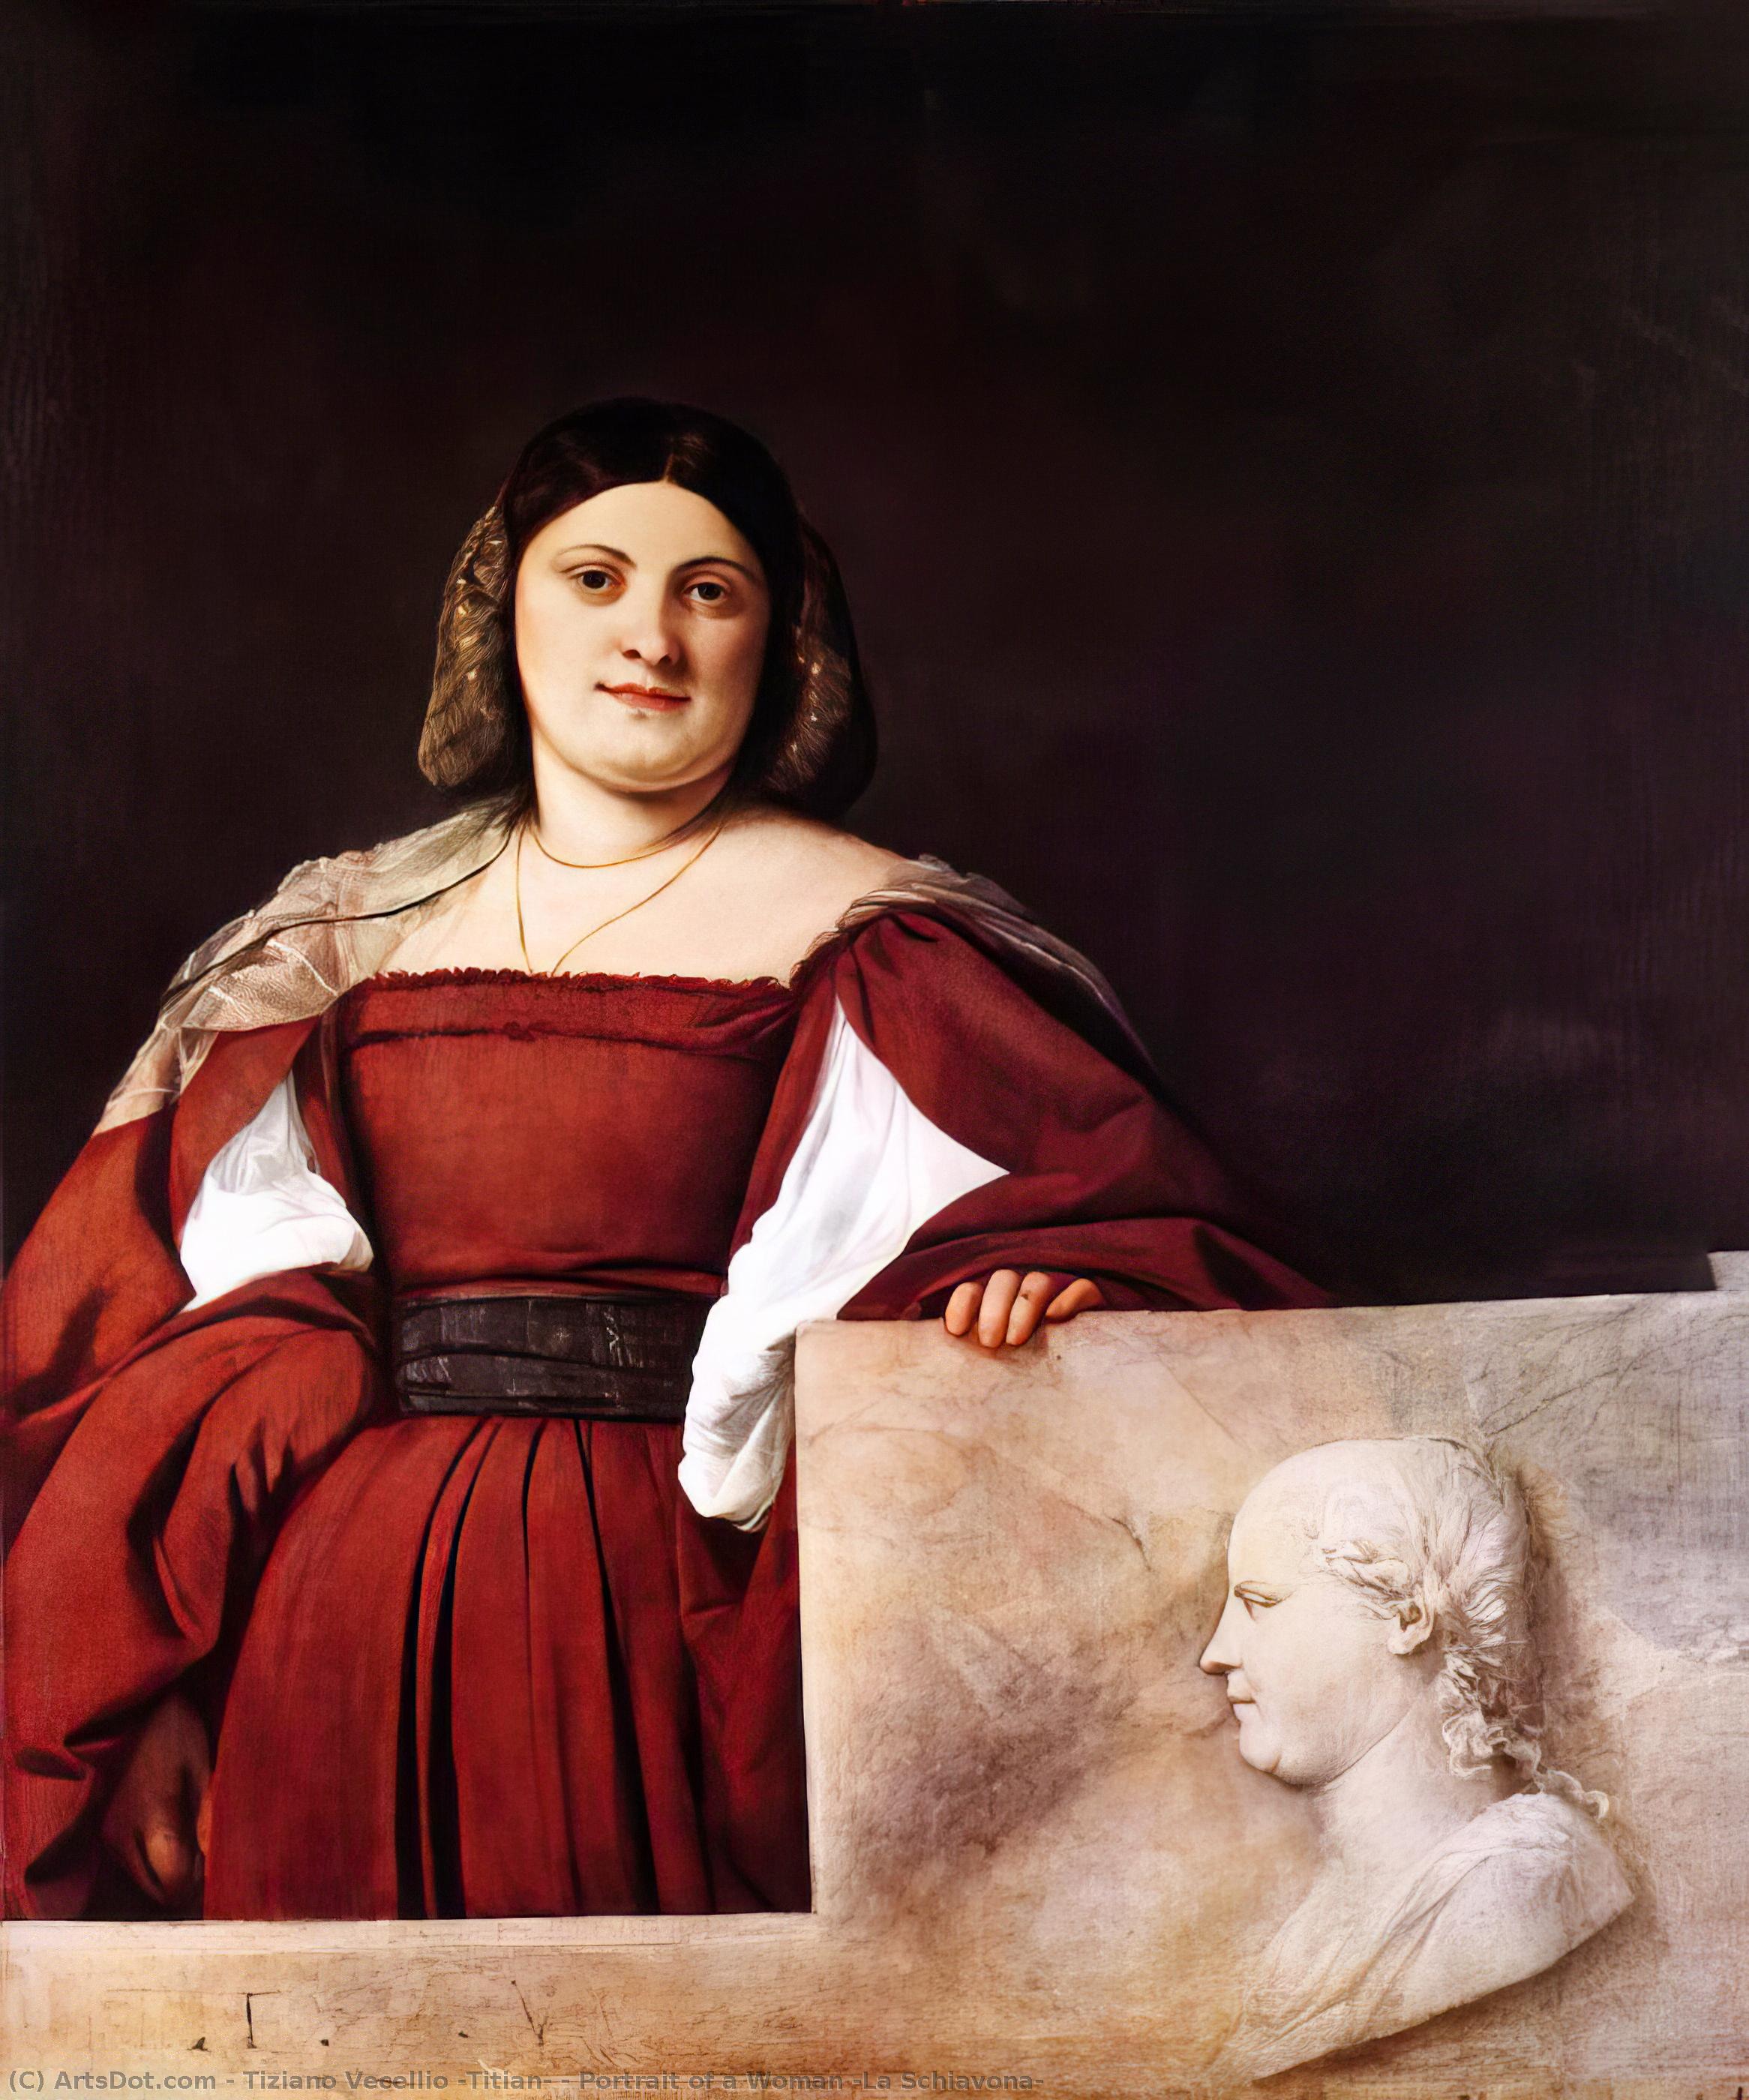 WikiOO.org - Encyclopedia of Fine Arts - Maleri, Artwork Tiziano Vecellio (Titian) - Portrait of a Woman (La Schiavona)